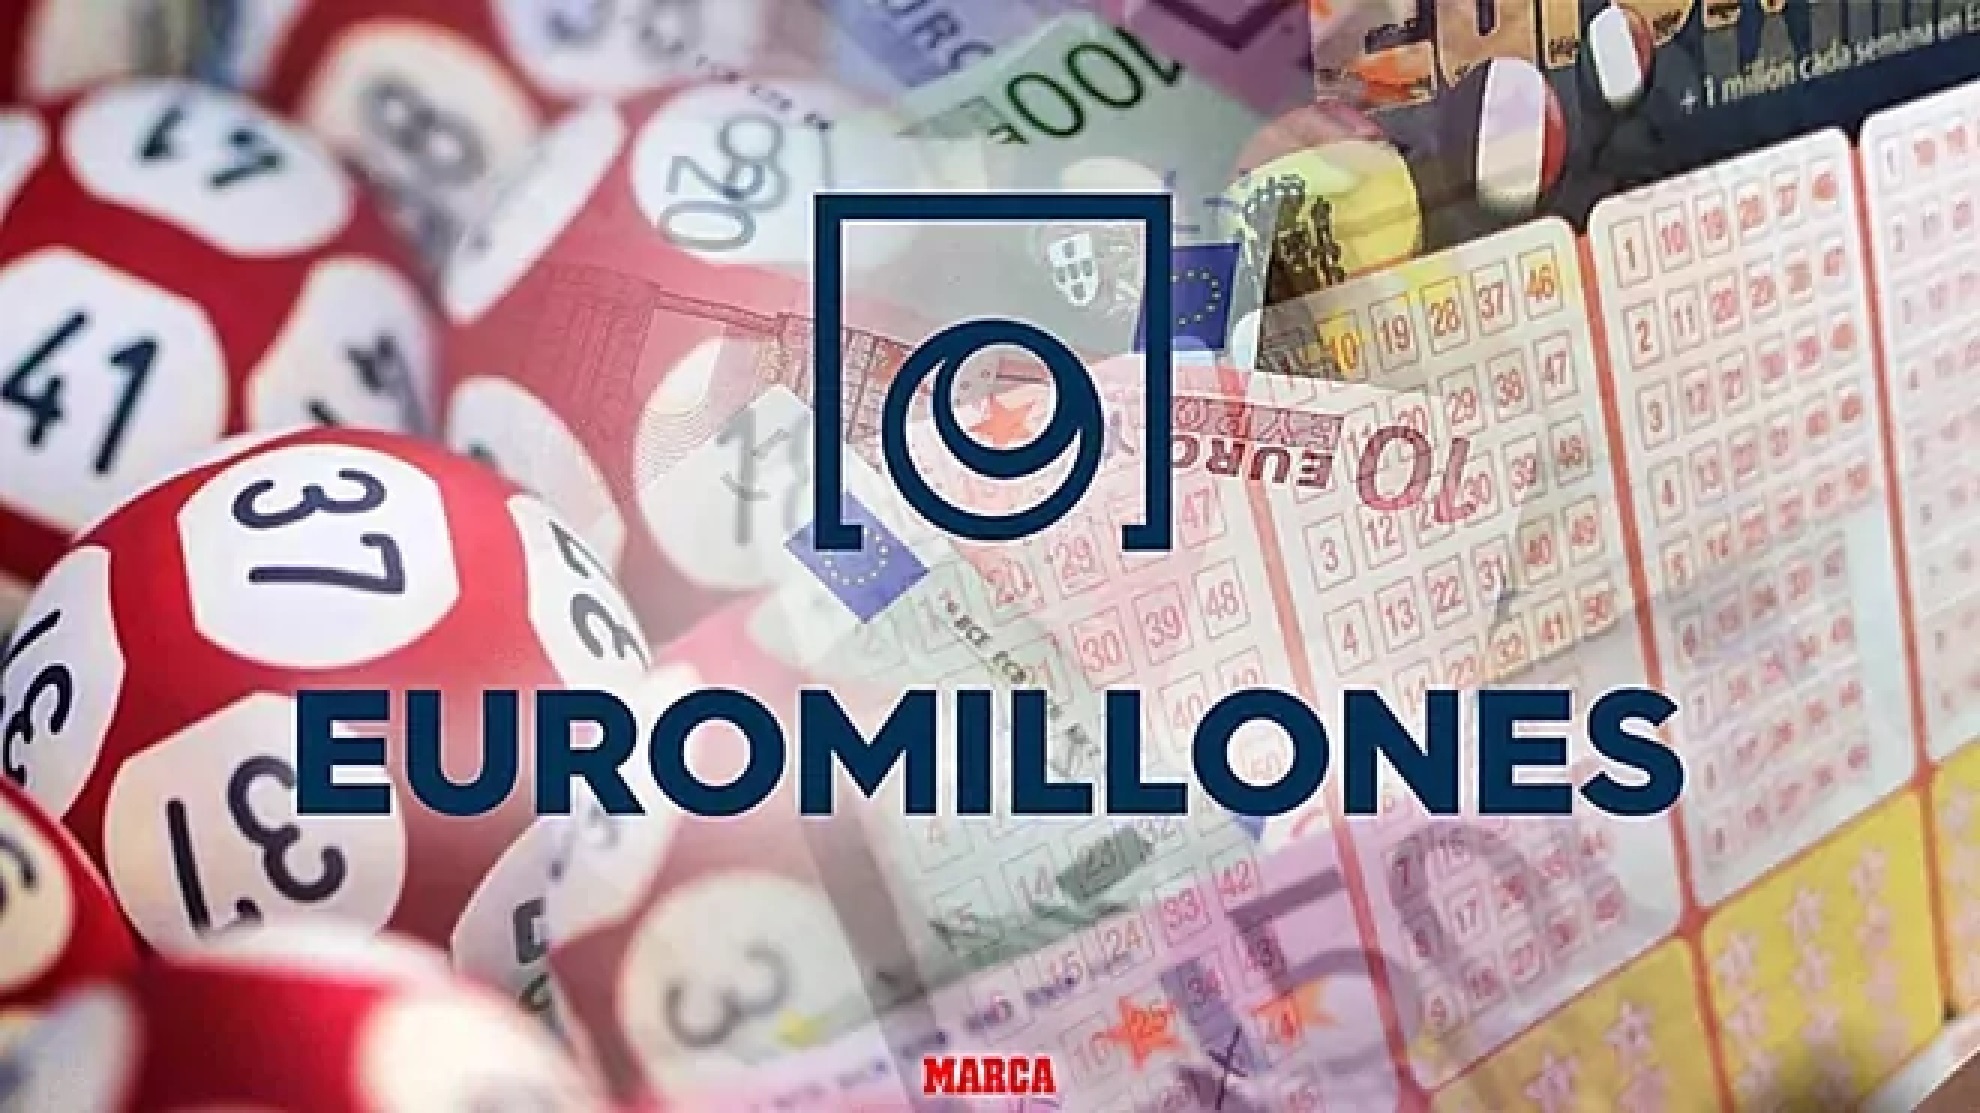 Comprobar Euromillones: resultado del sorteo hoy viernes, 23 de septiembre de 2022